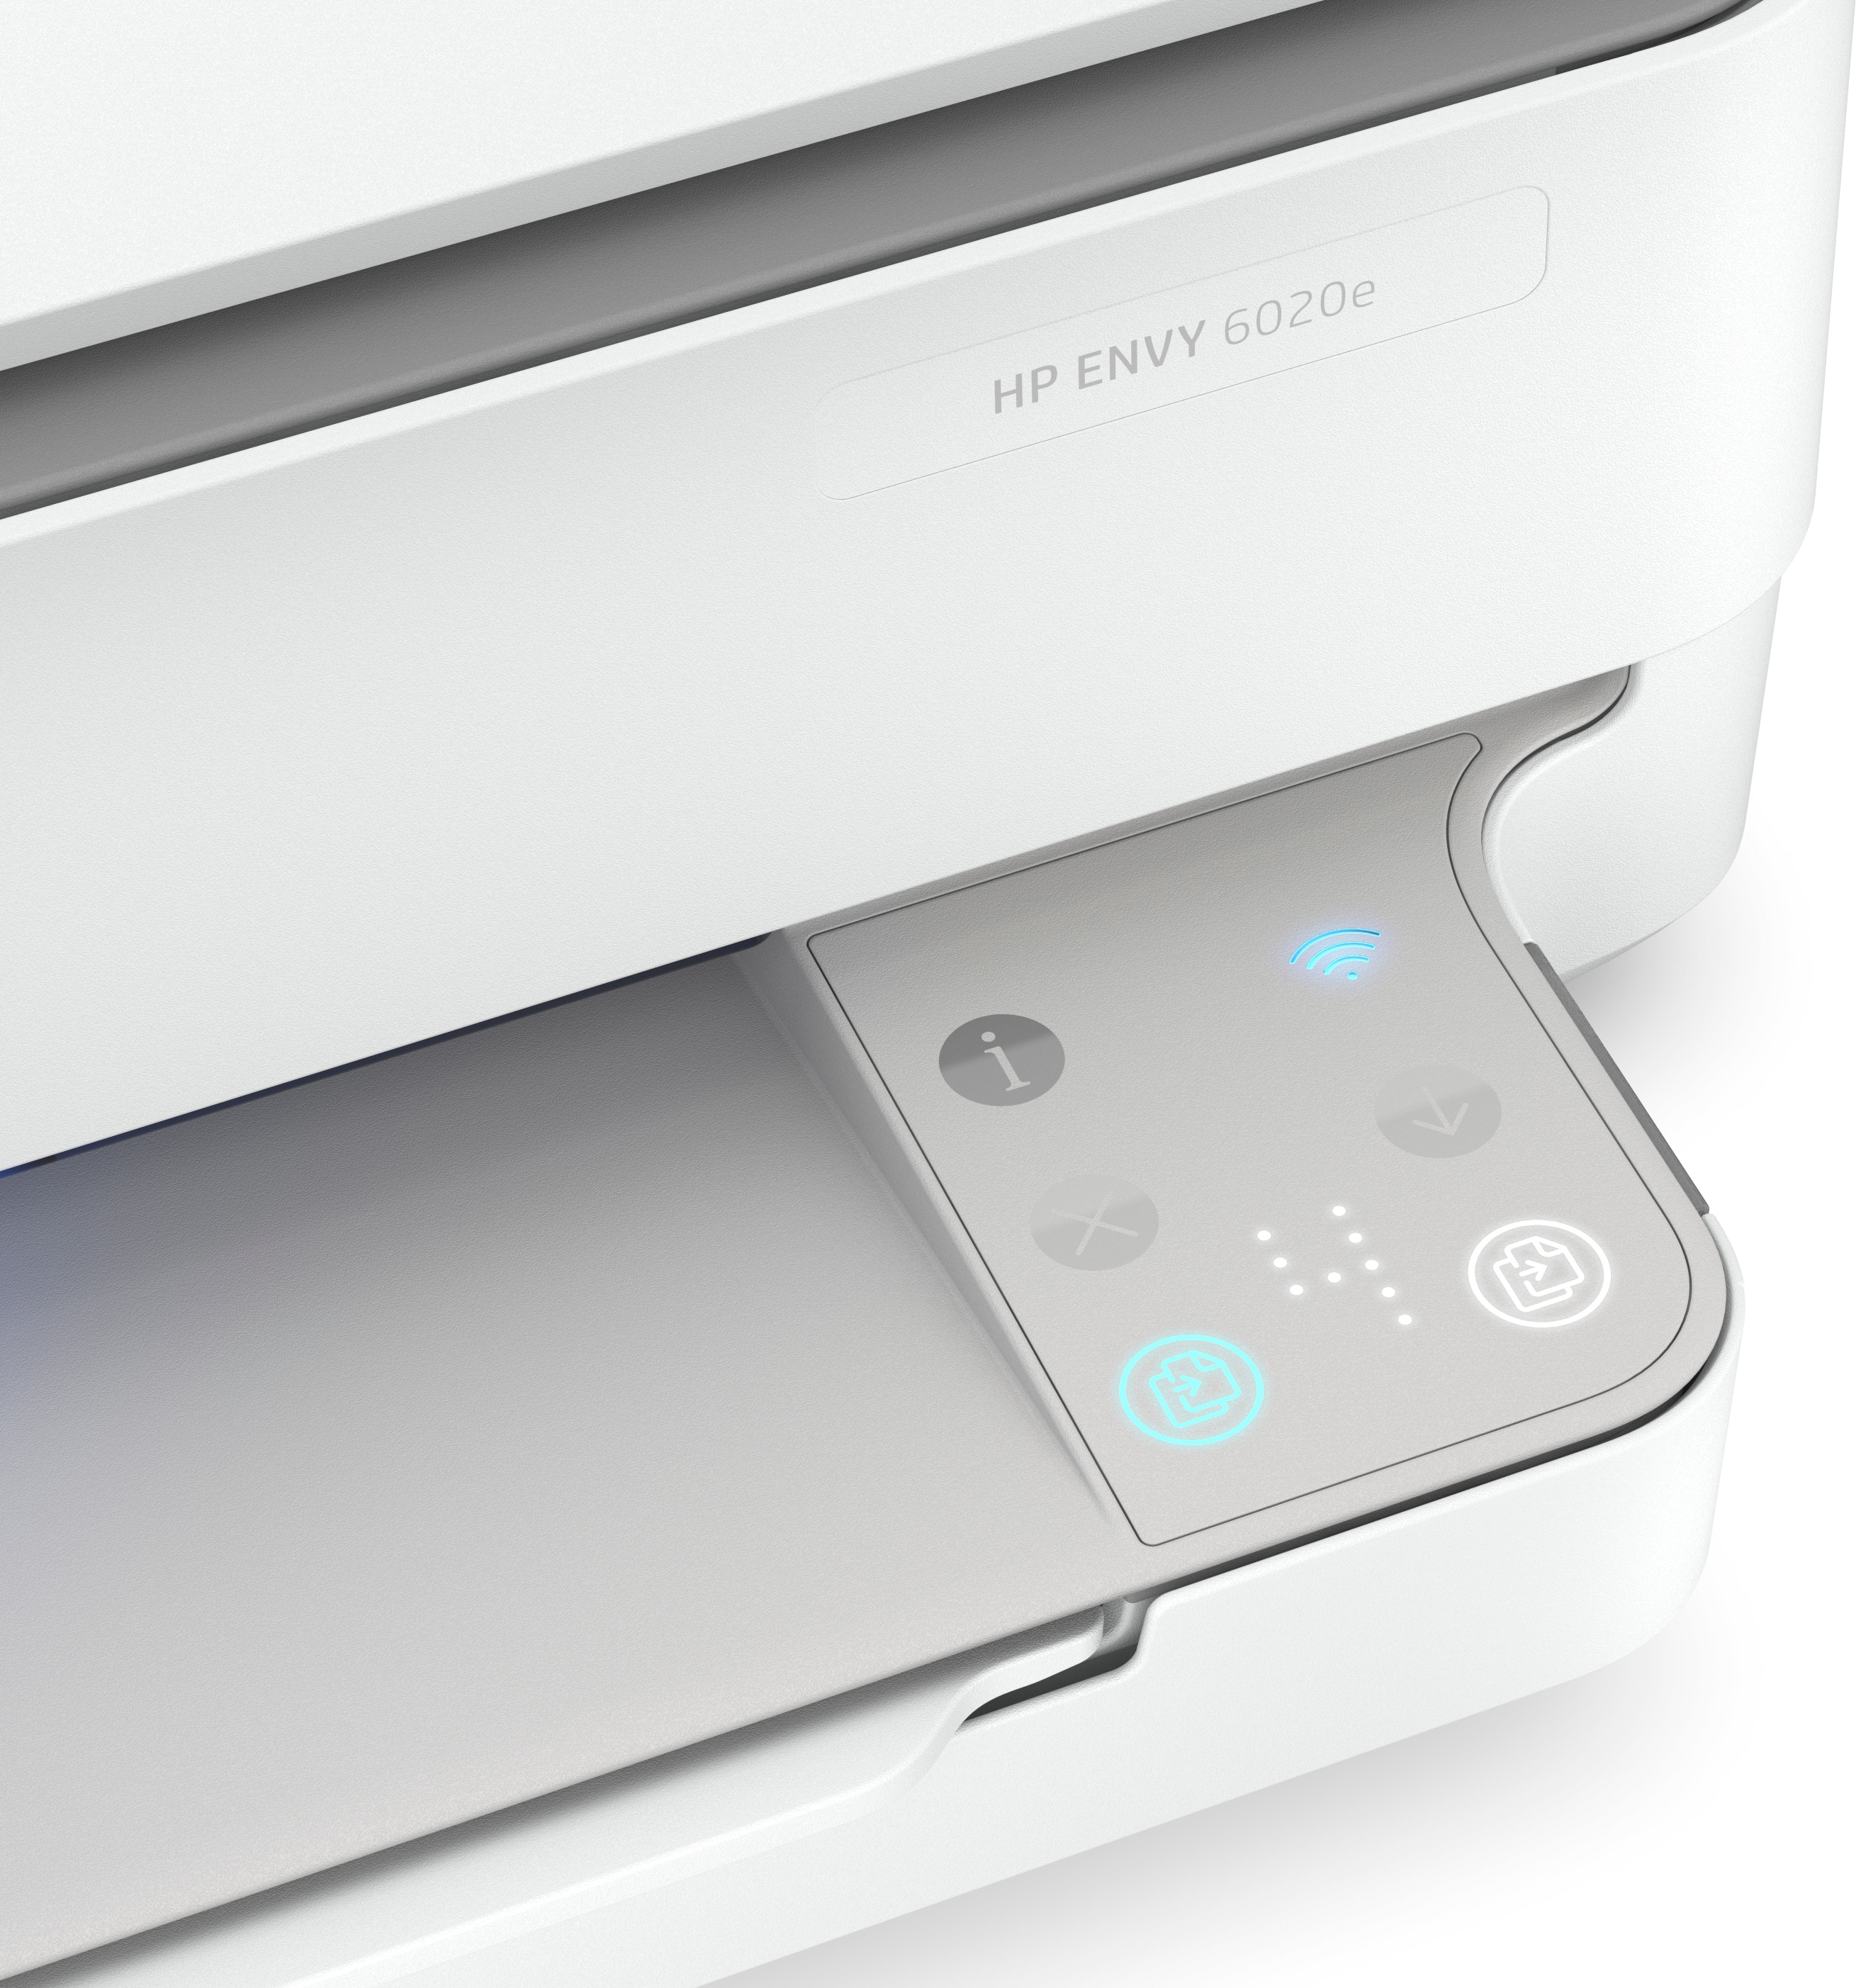 HP Envy 6020e Inkjet WLAN Multifunktionsdrucker